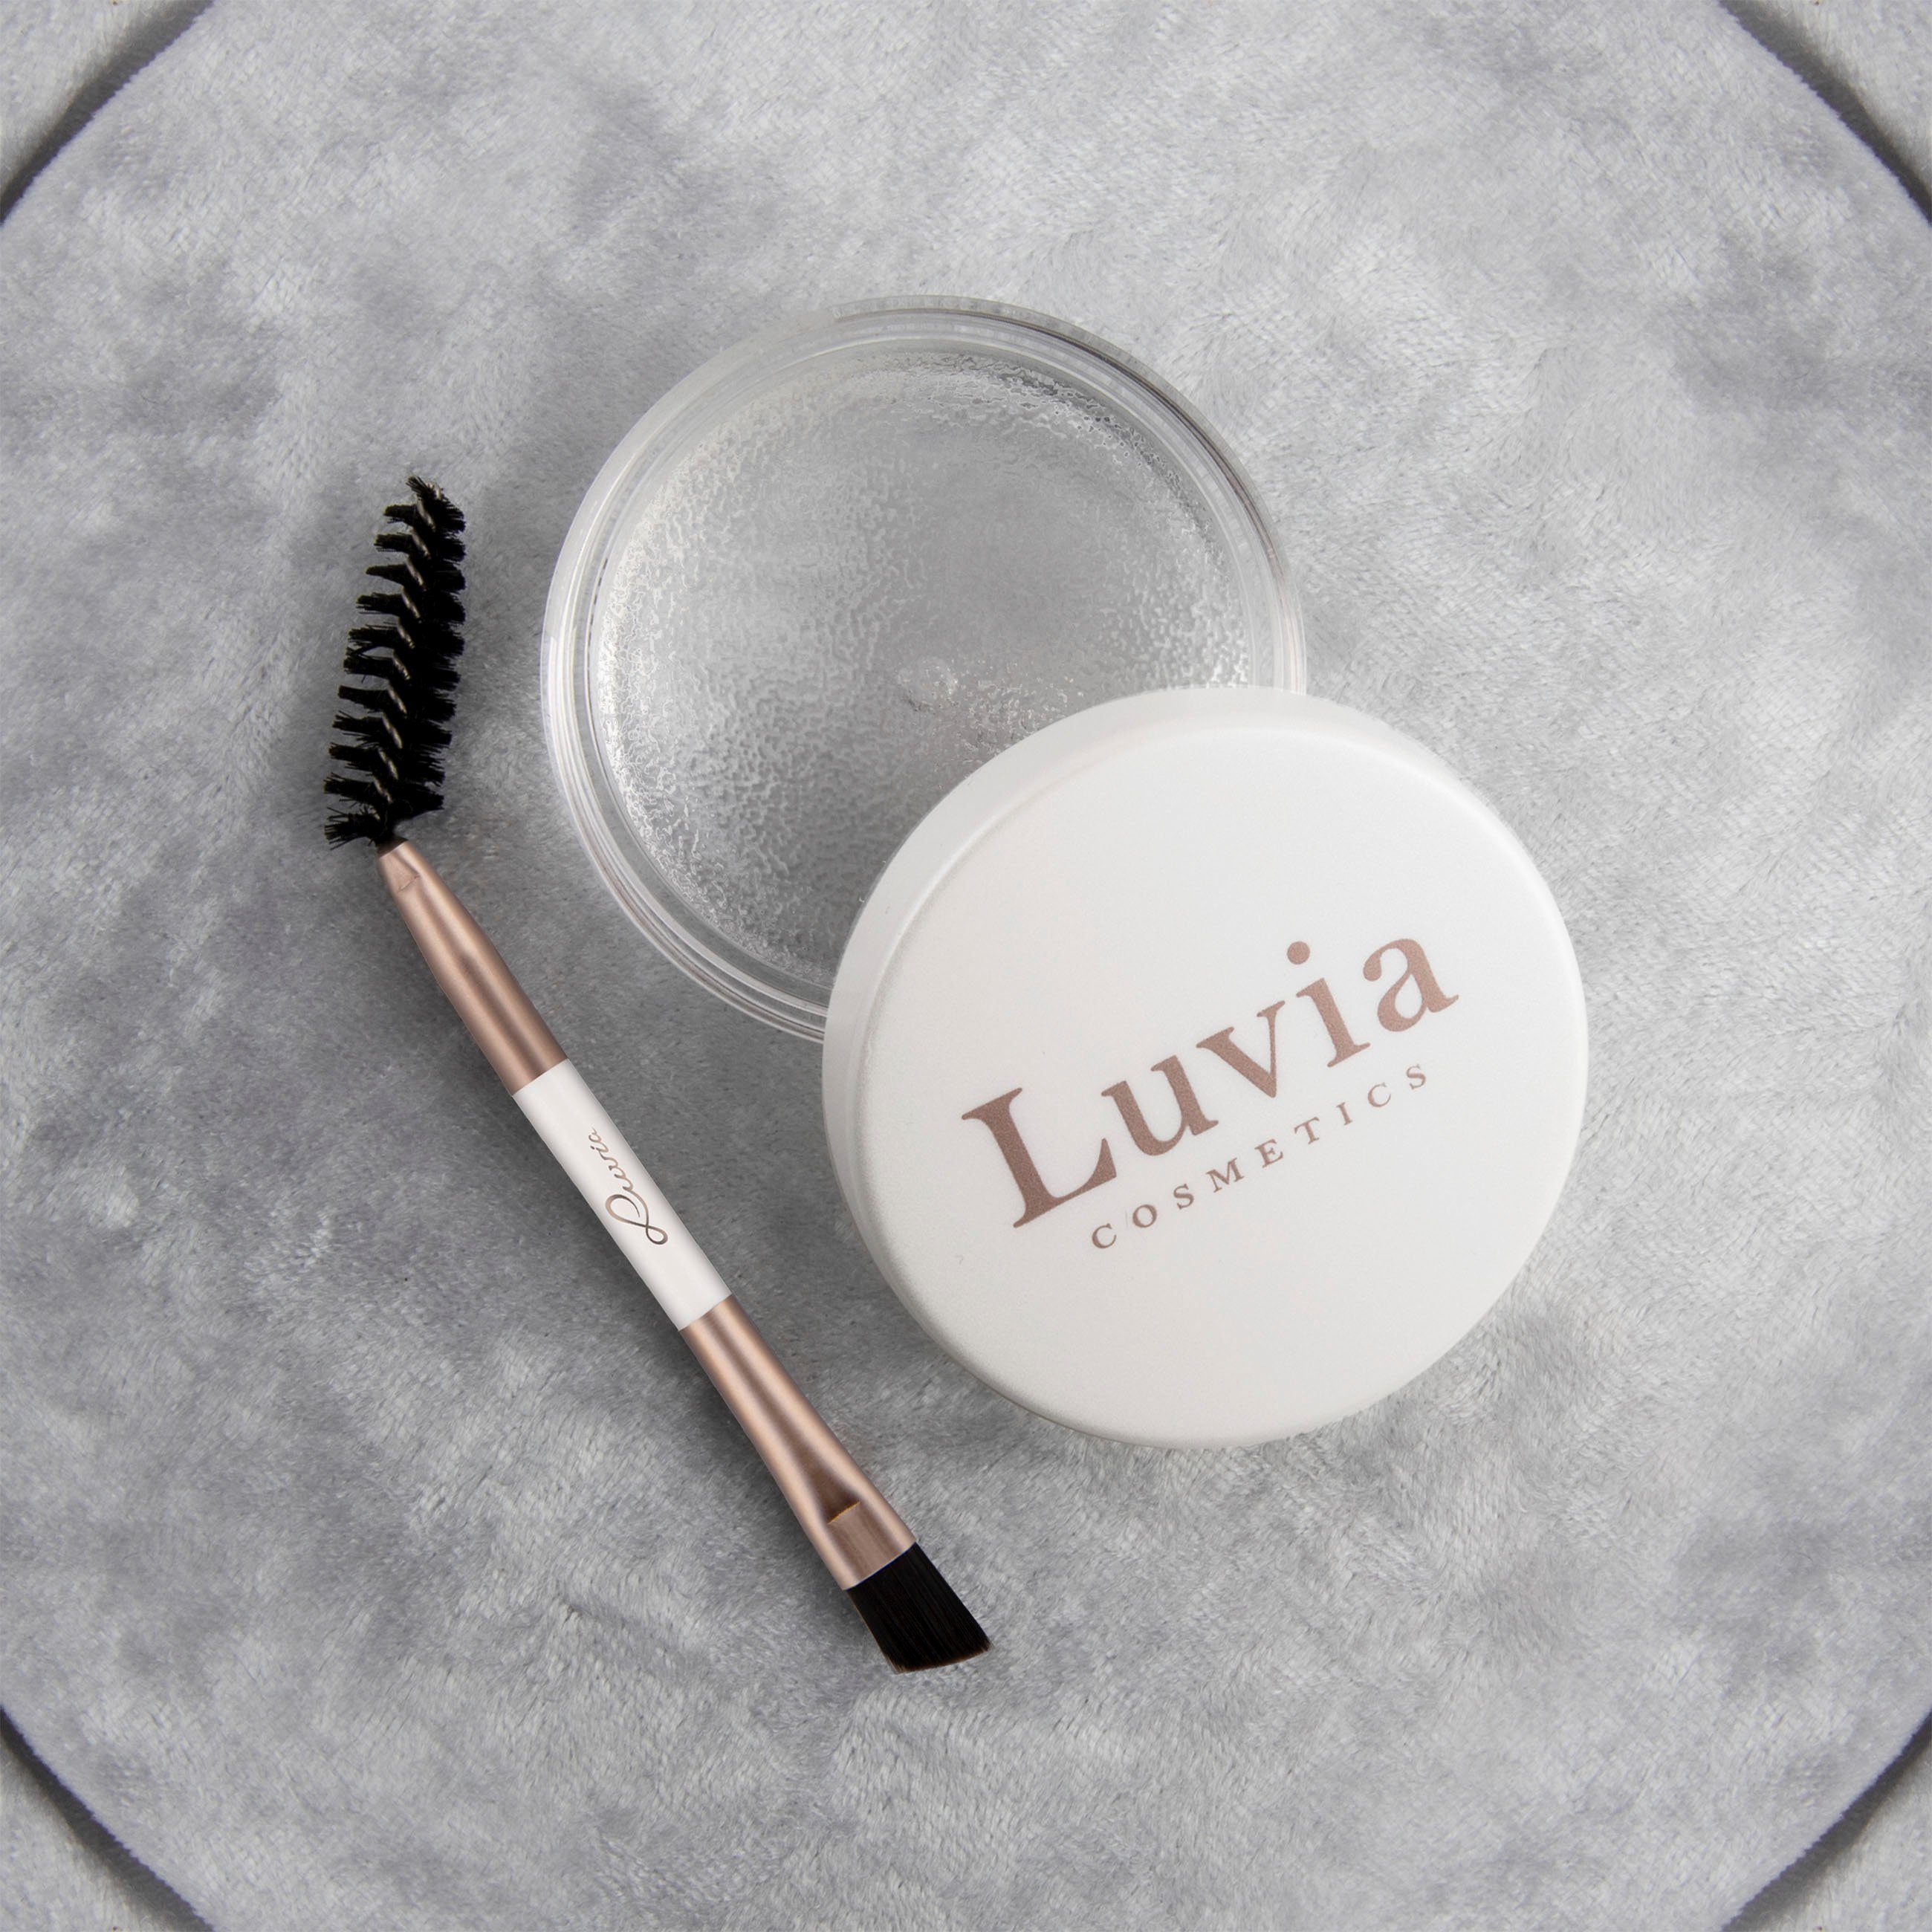 Luvia Cosmetics Lidschatten-Palette Brow Styling Gel